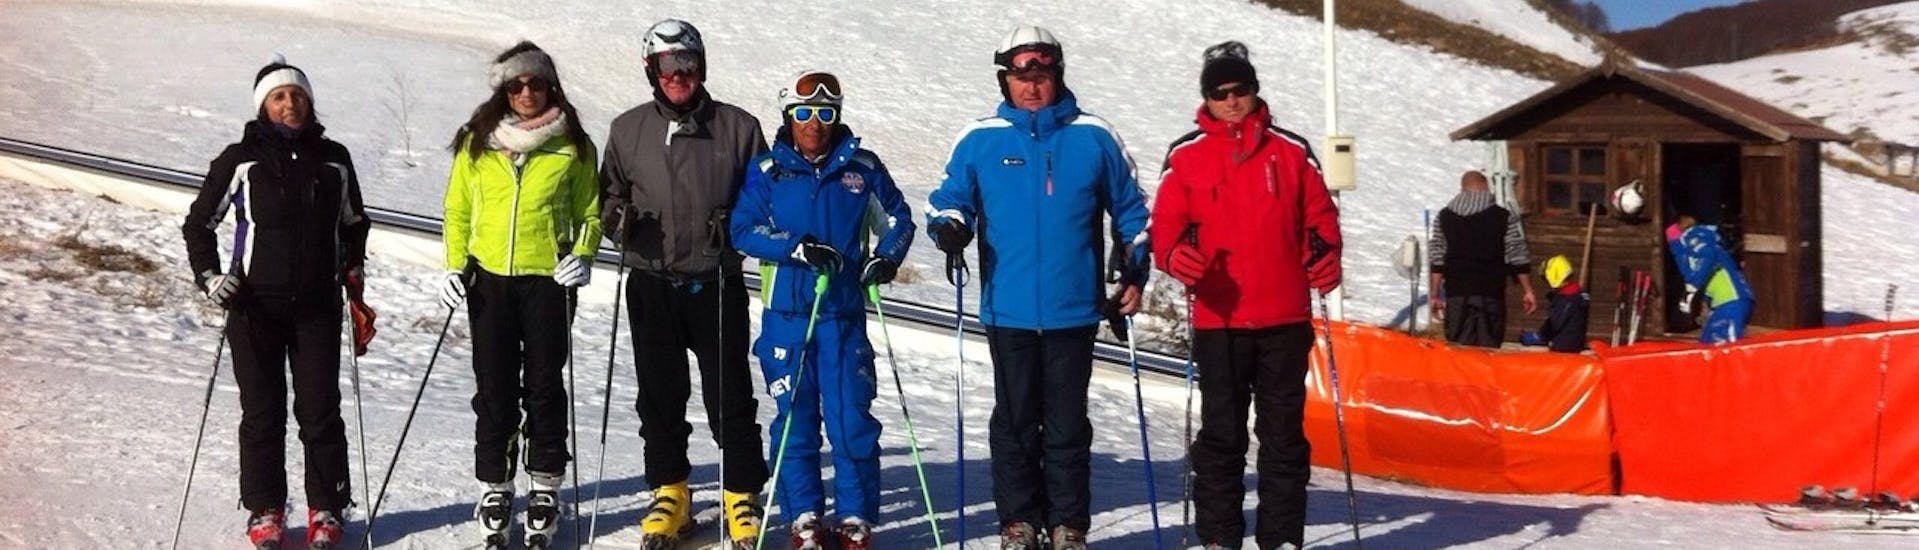 Cours particulier de ski Adultes dès 16 ans pour Tous niveaux.